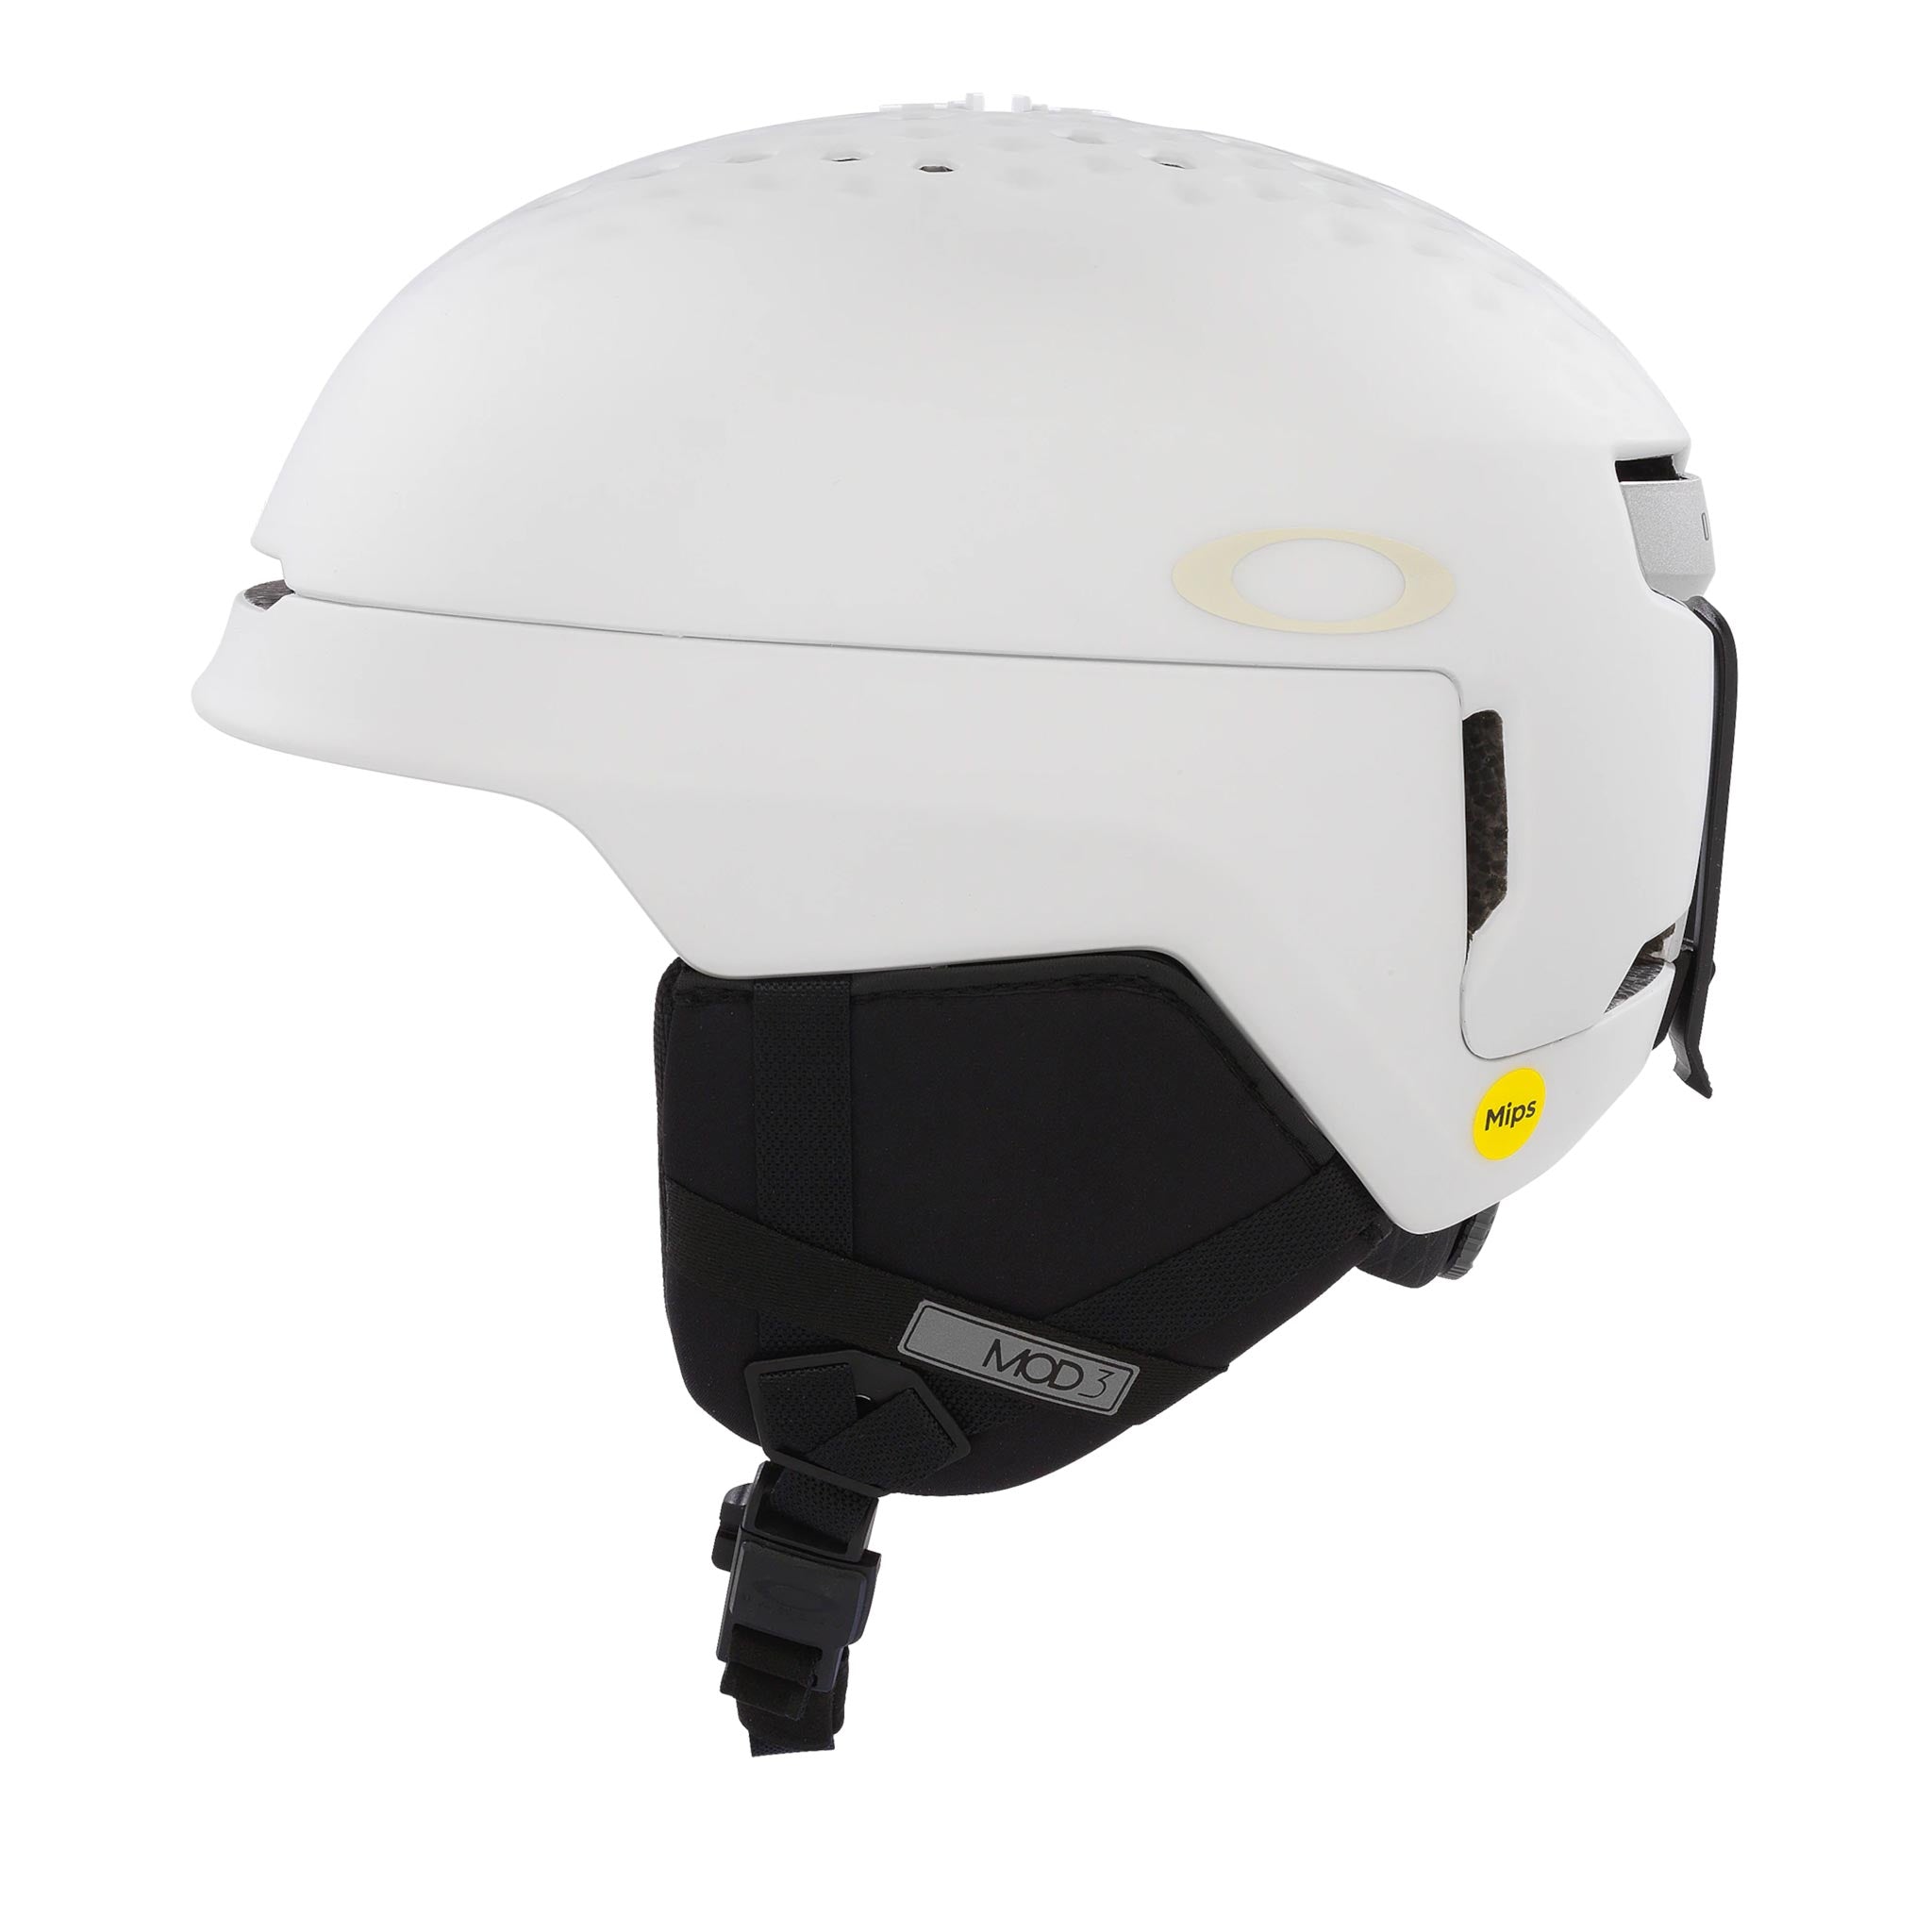 Mod3 MIPS Helmet in Matte White